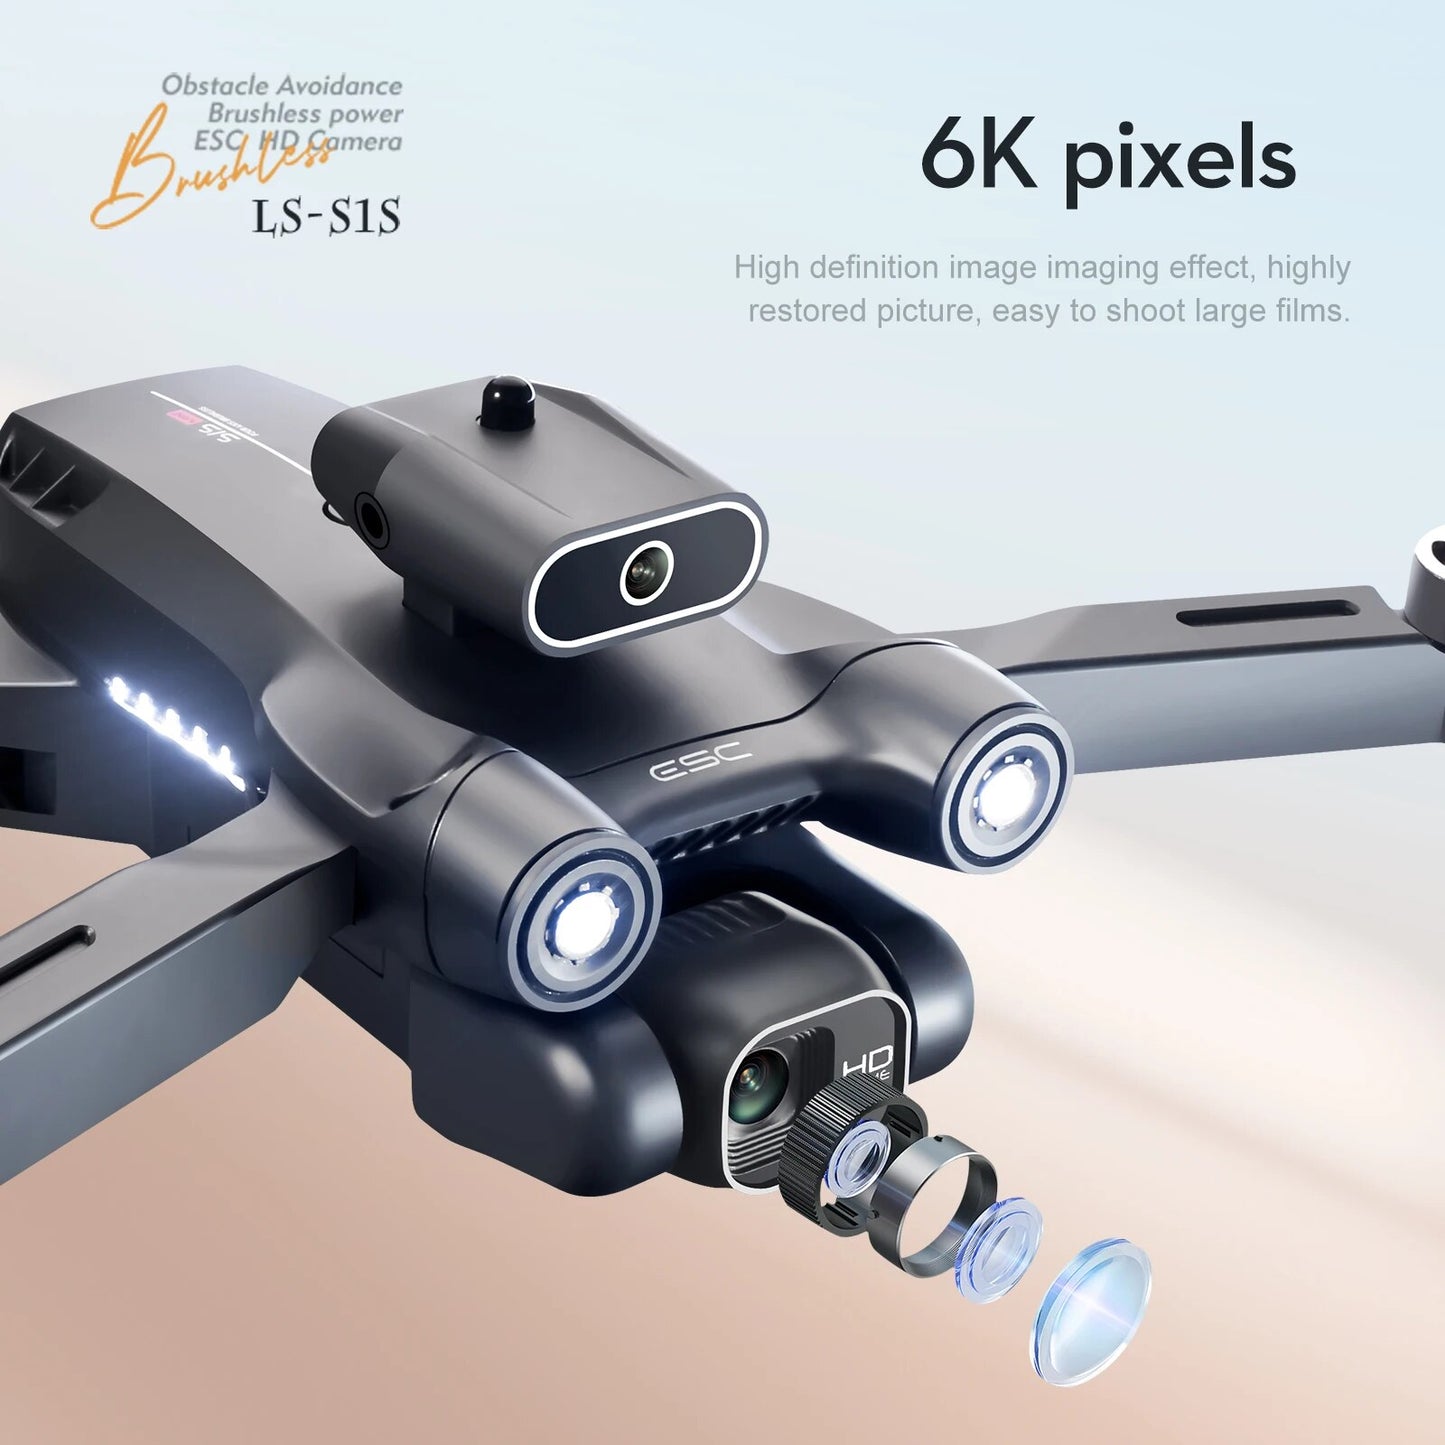 Nouveau S1S Mini Drone 4k professionnel 8K HD caméra évitement d'obstacles photographie aérienne sans brosse pliable quadrirotor 3km